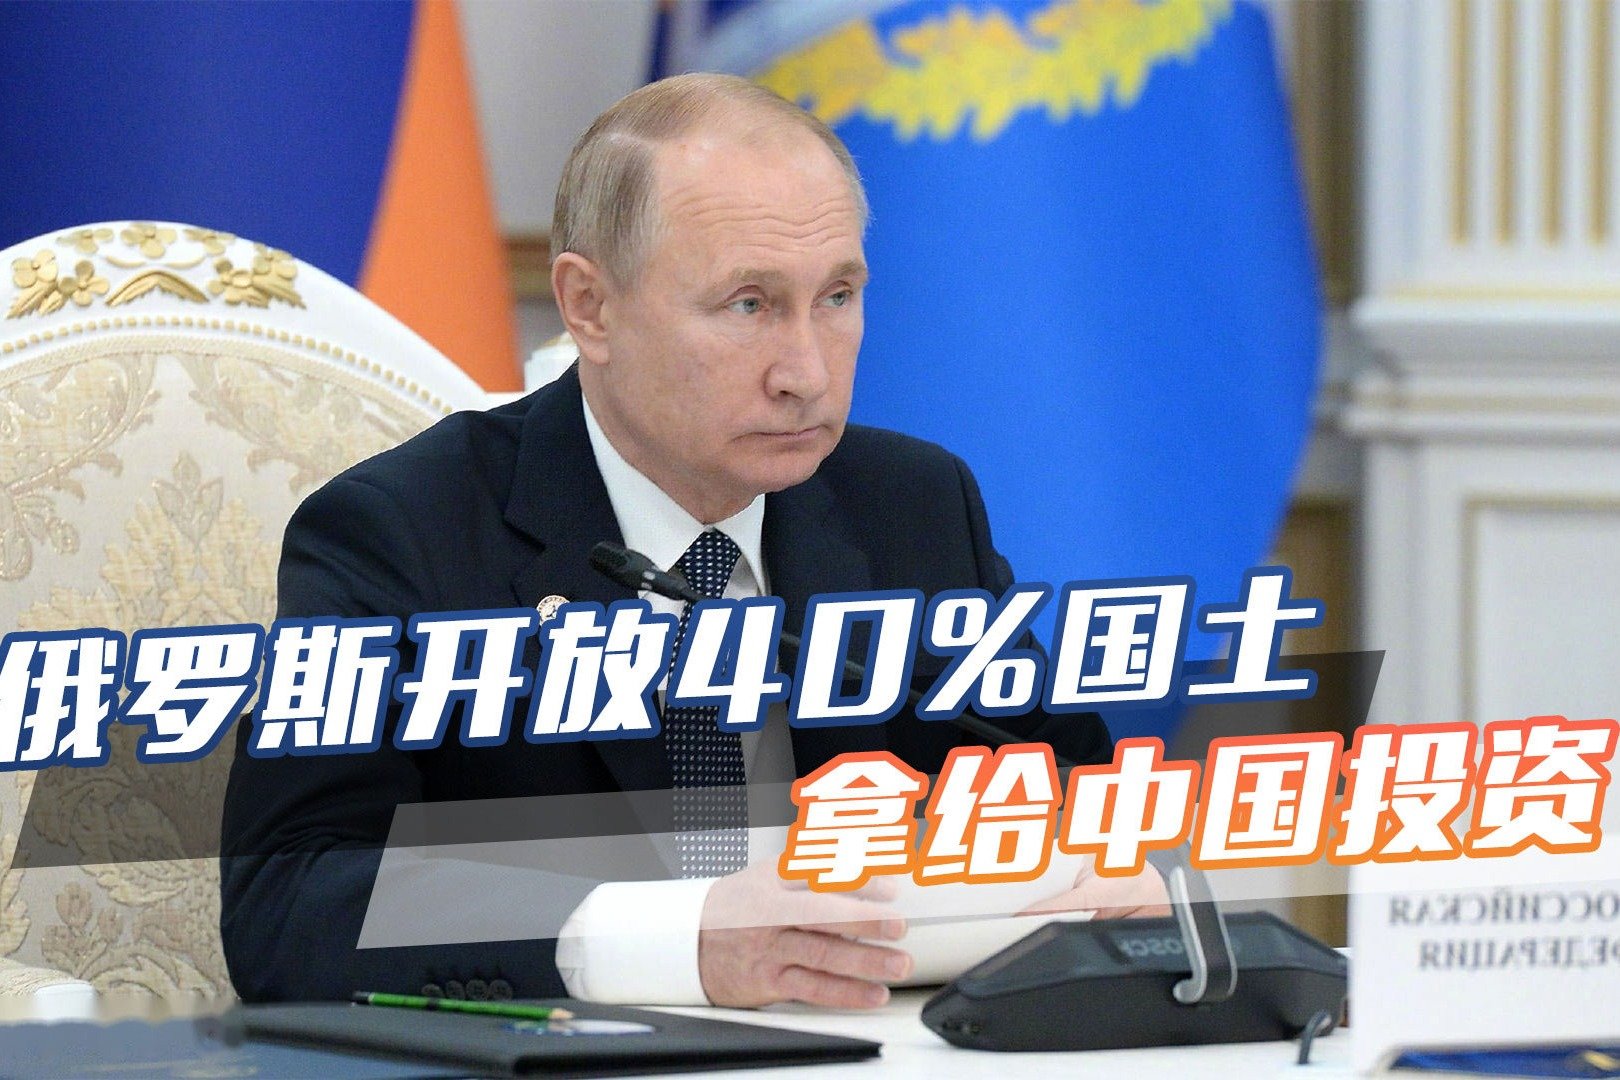 俄罗斯向中国提议按世界技能大赛标准共办导师培训学院 - 2019年8月28日, 俄罗斯卫星通讯社